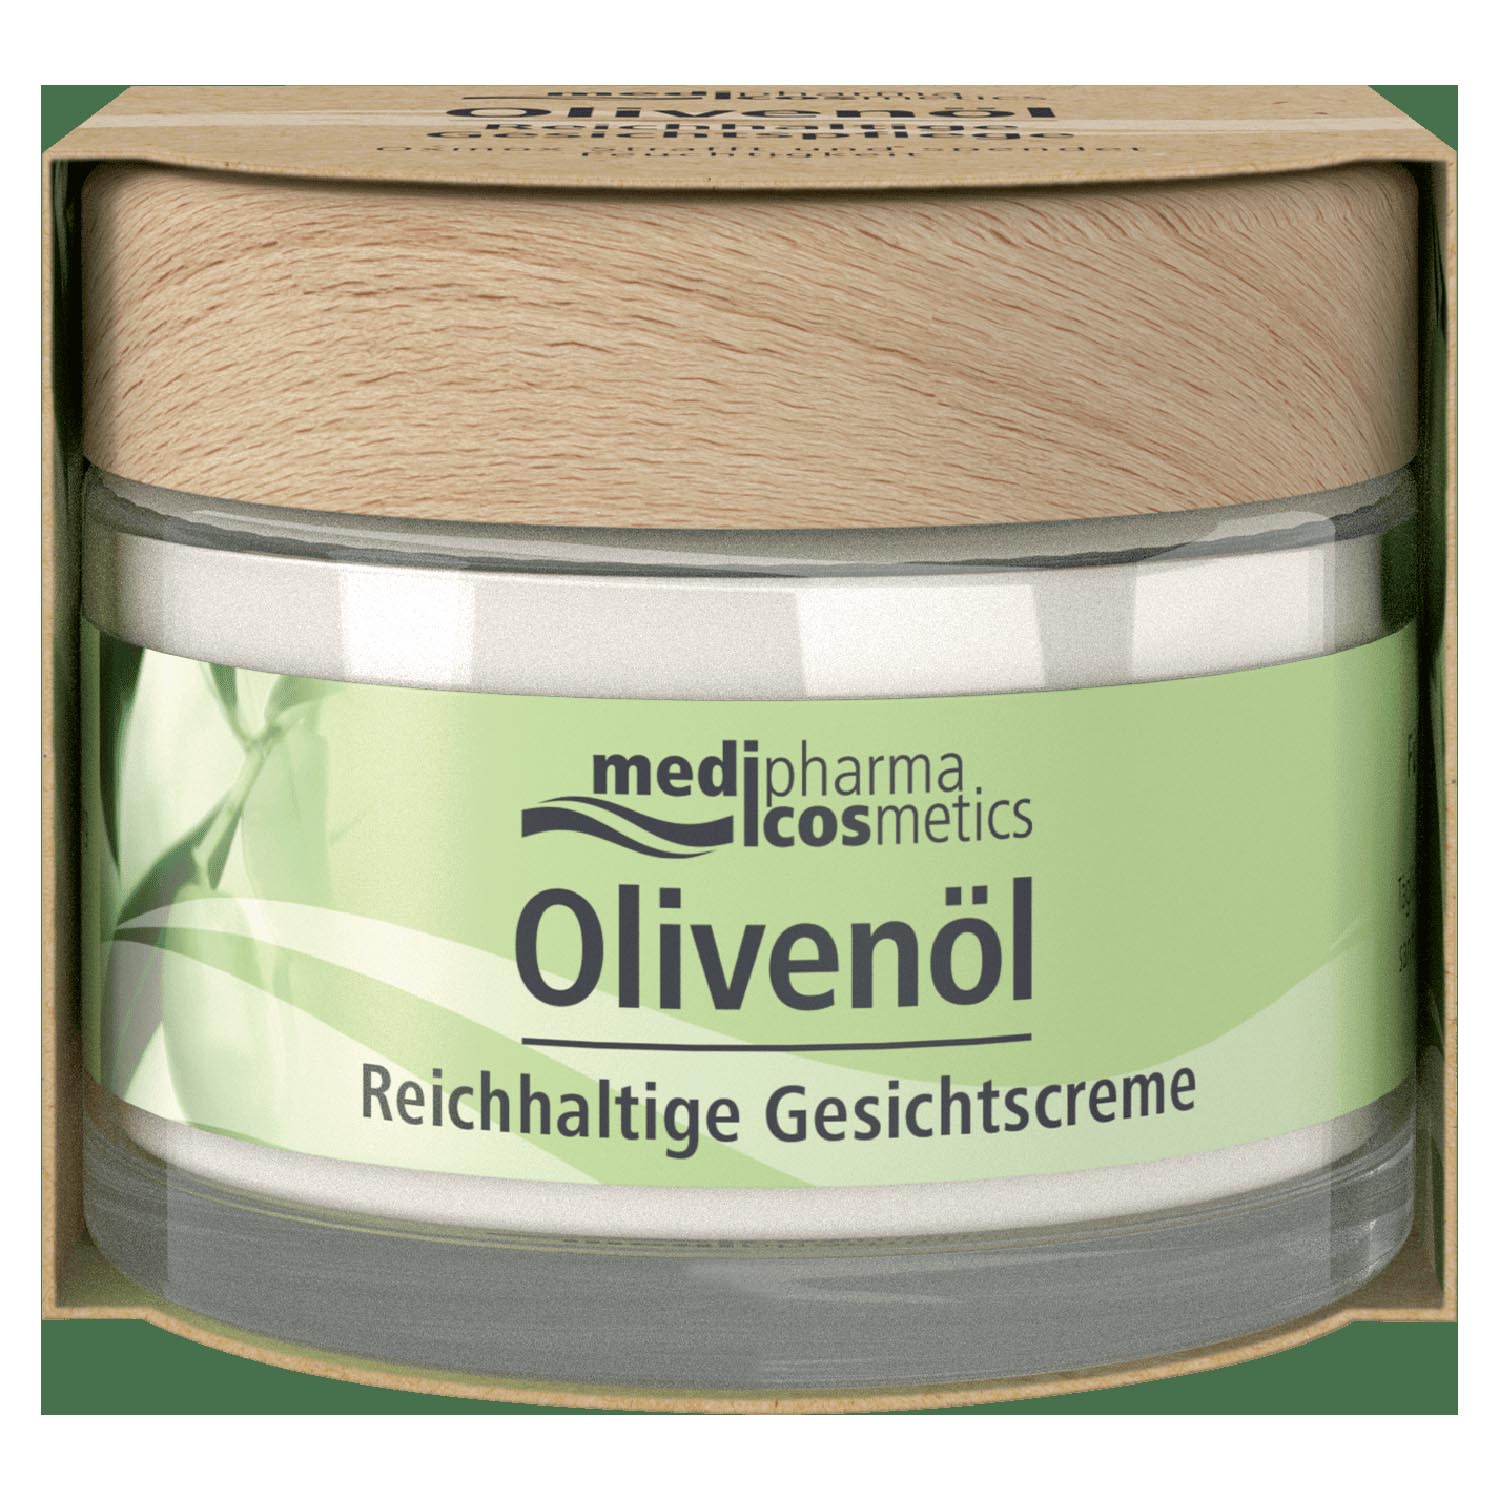 Купить Medipharma Cosmetics Обогащенный крем для лица, 50 мл (Medipharma Cosmetics, Olivenol), Германия